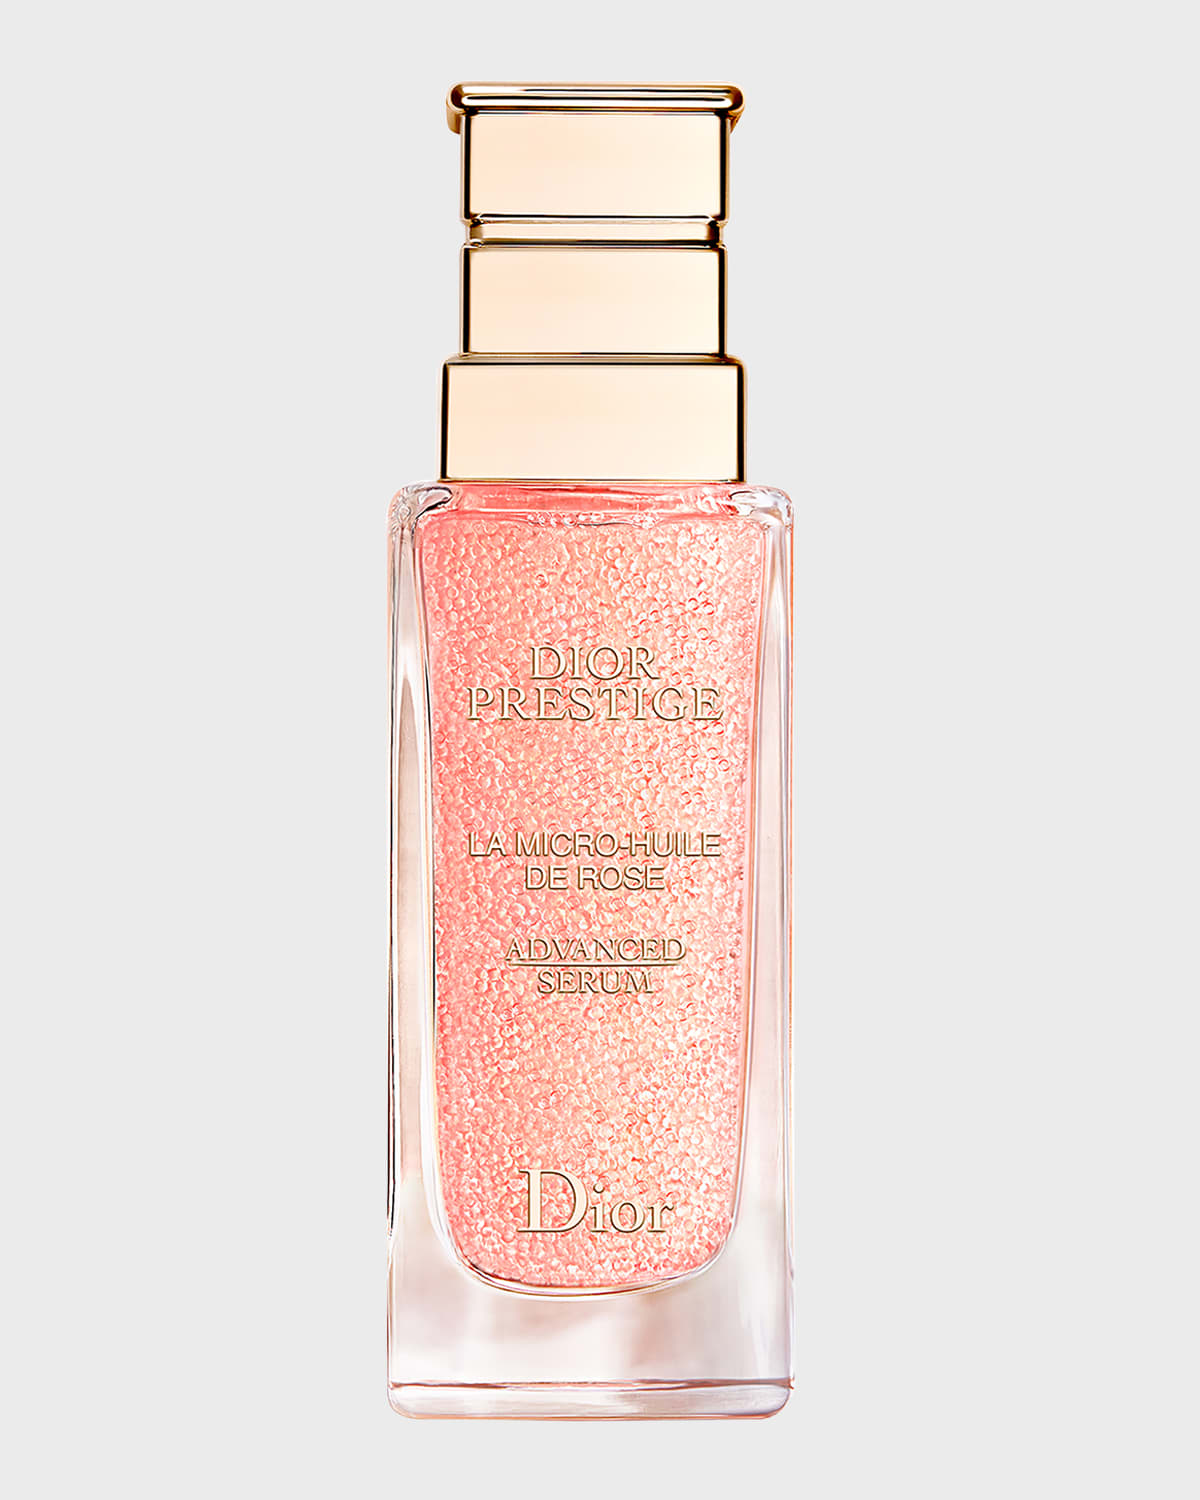 Dior Prestige La Micro-Huile de Rose Advanced Serum, 1.7 oz.